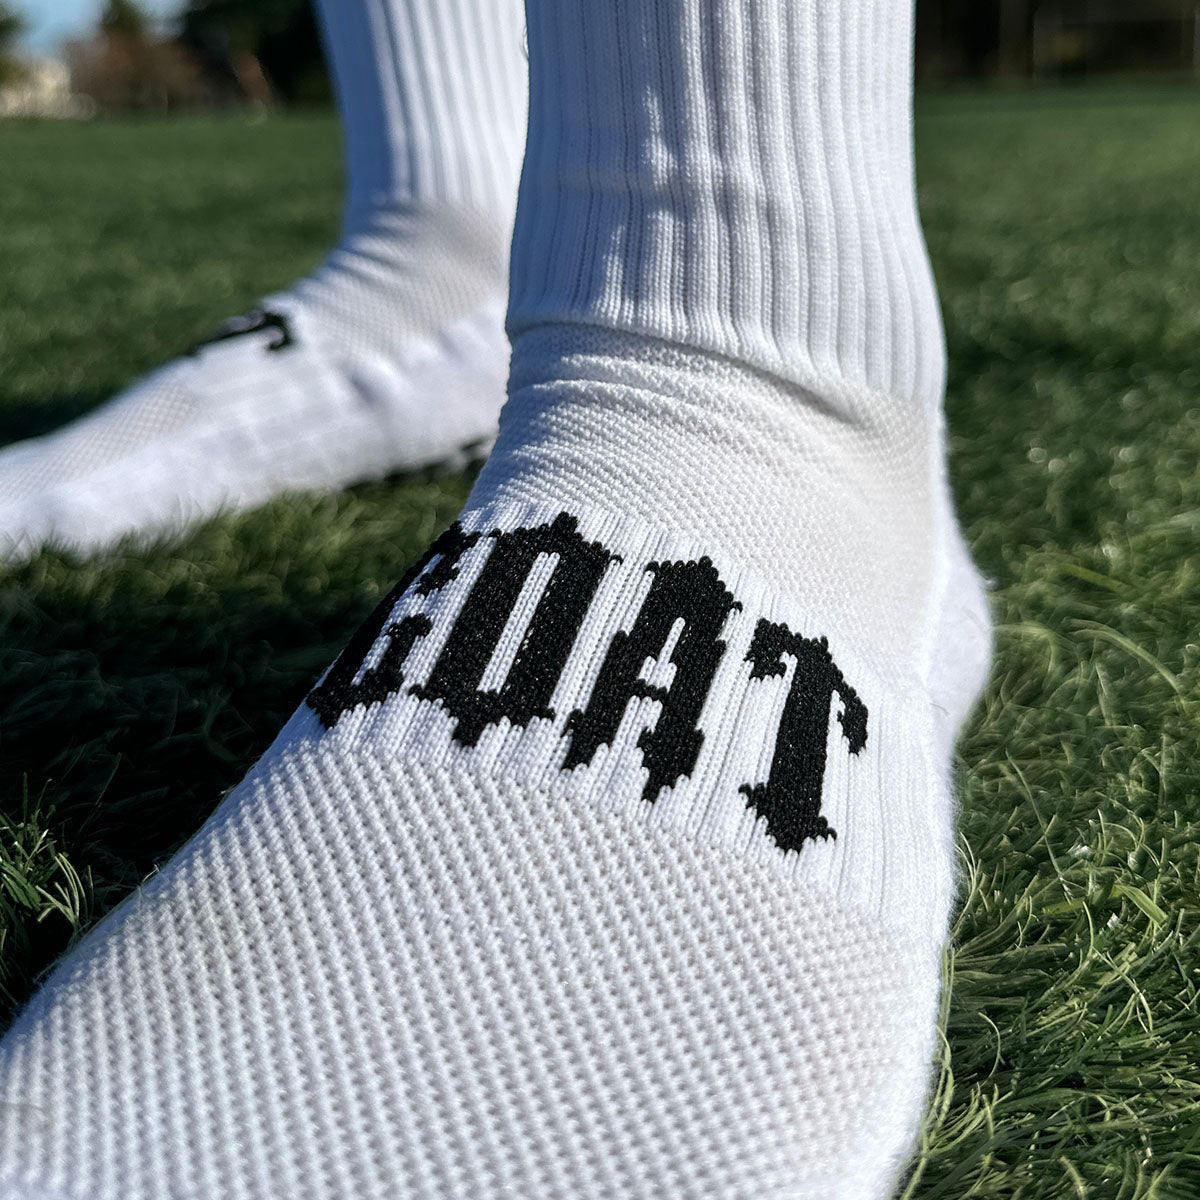 MEDUCA "GOAT" Grip Socks 3-PACK